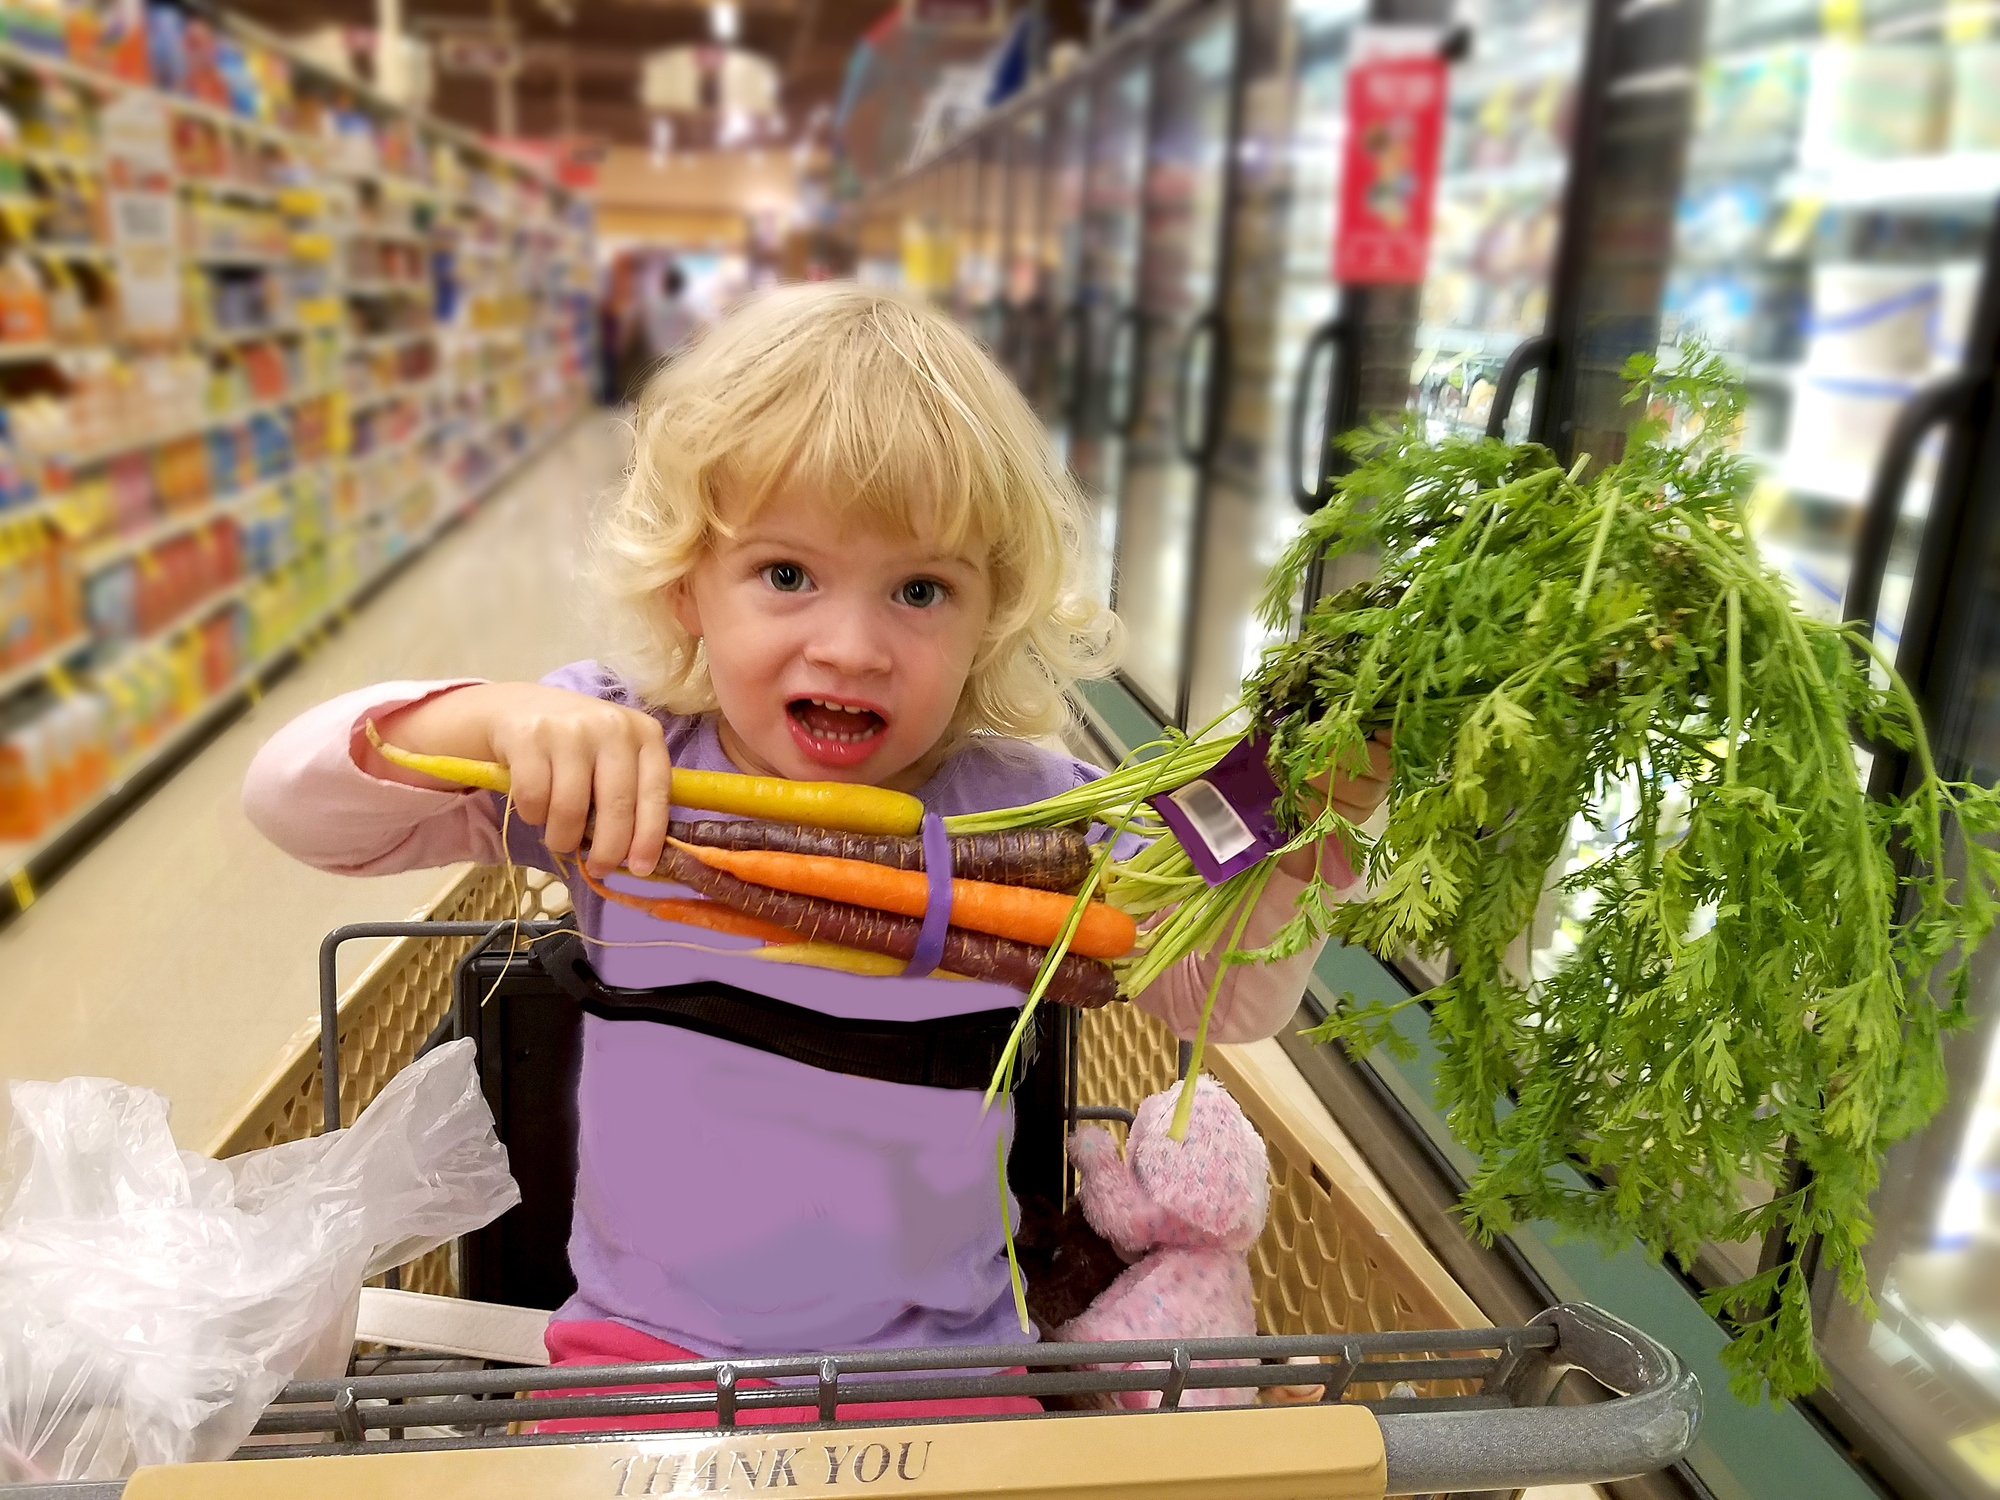 Фото №1 - Вечный спор: можно ли сажать детей в тележки в супермаркетах